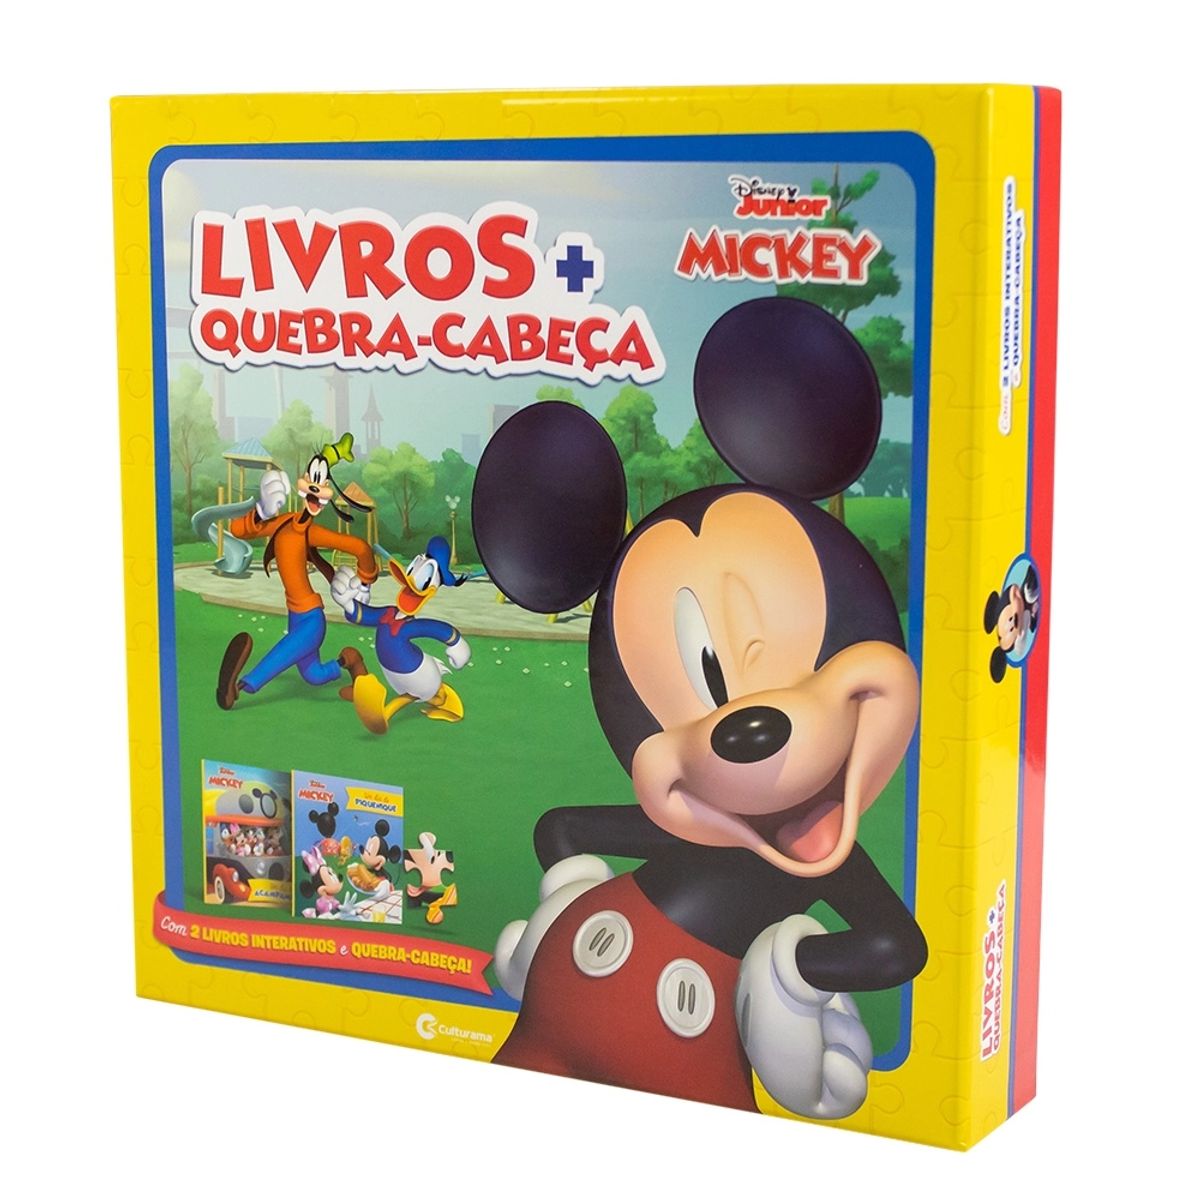 Box de Livros + Quebra-Cabeça Culturama Mickey image number 0